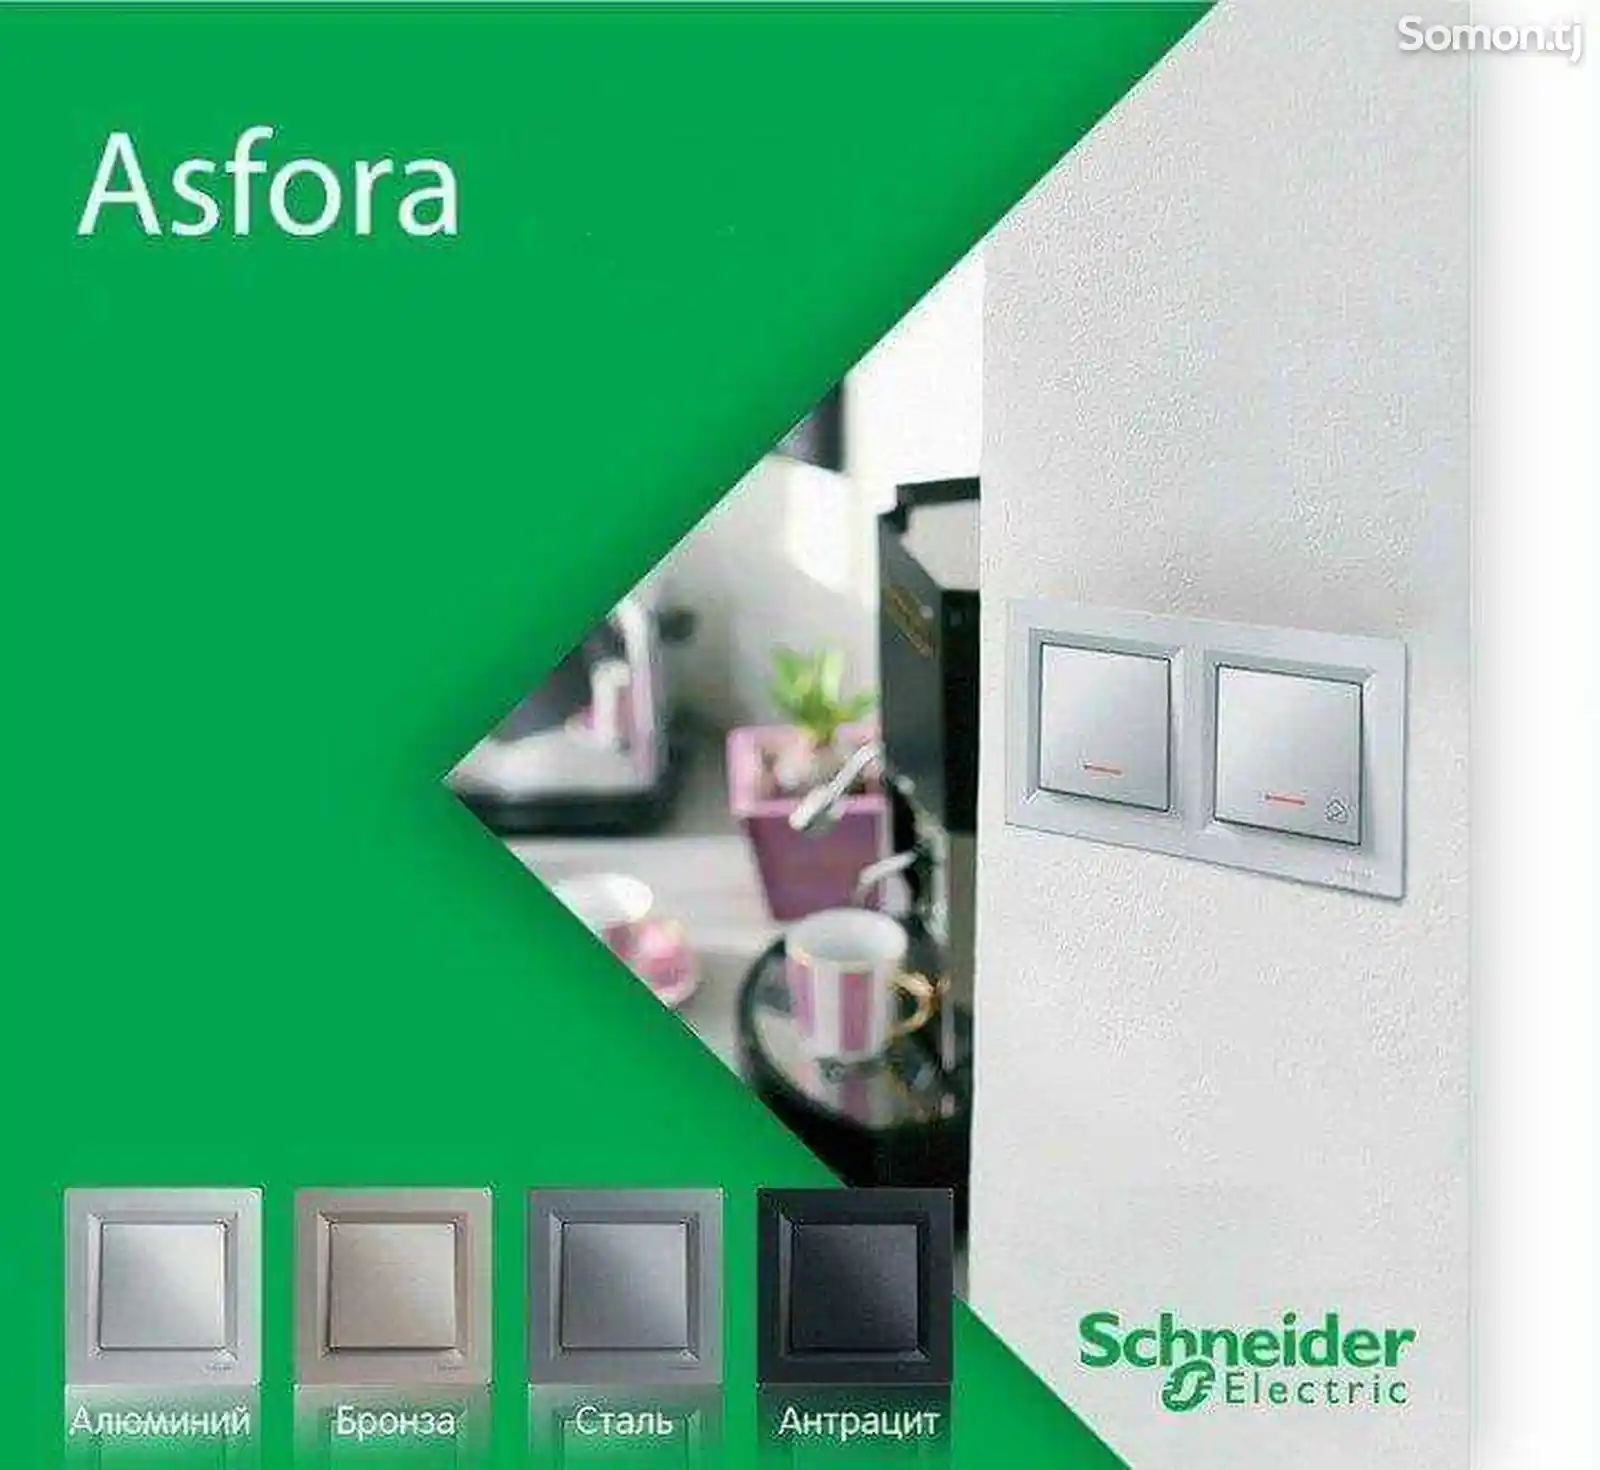 Розетки и выключатели Schneider Electric серии Asfora-4